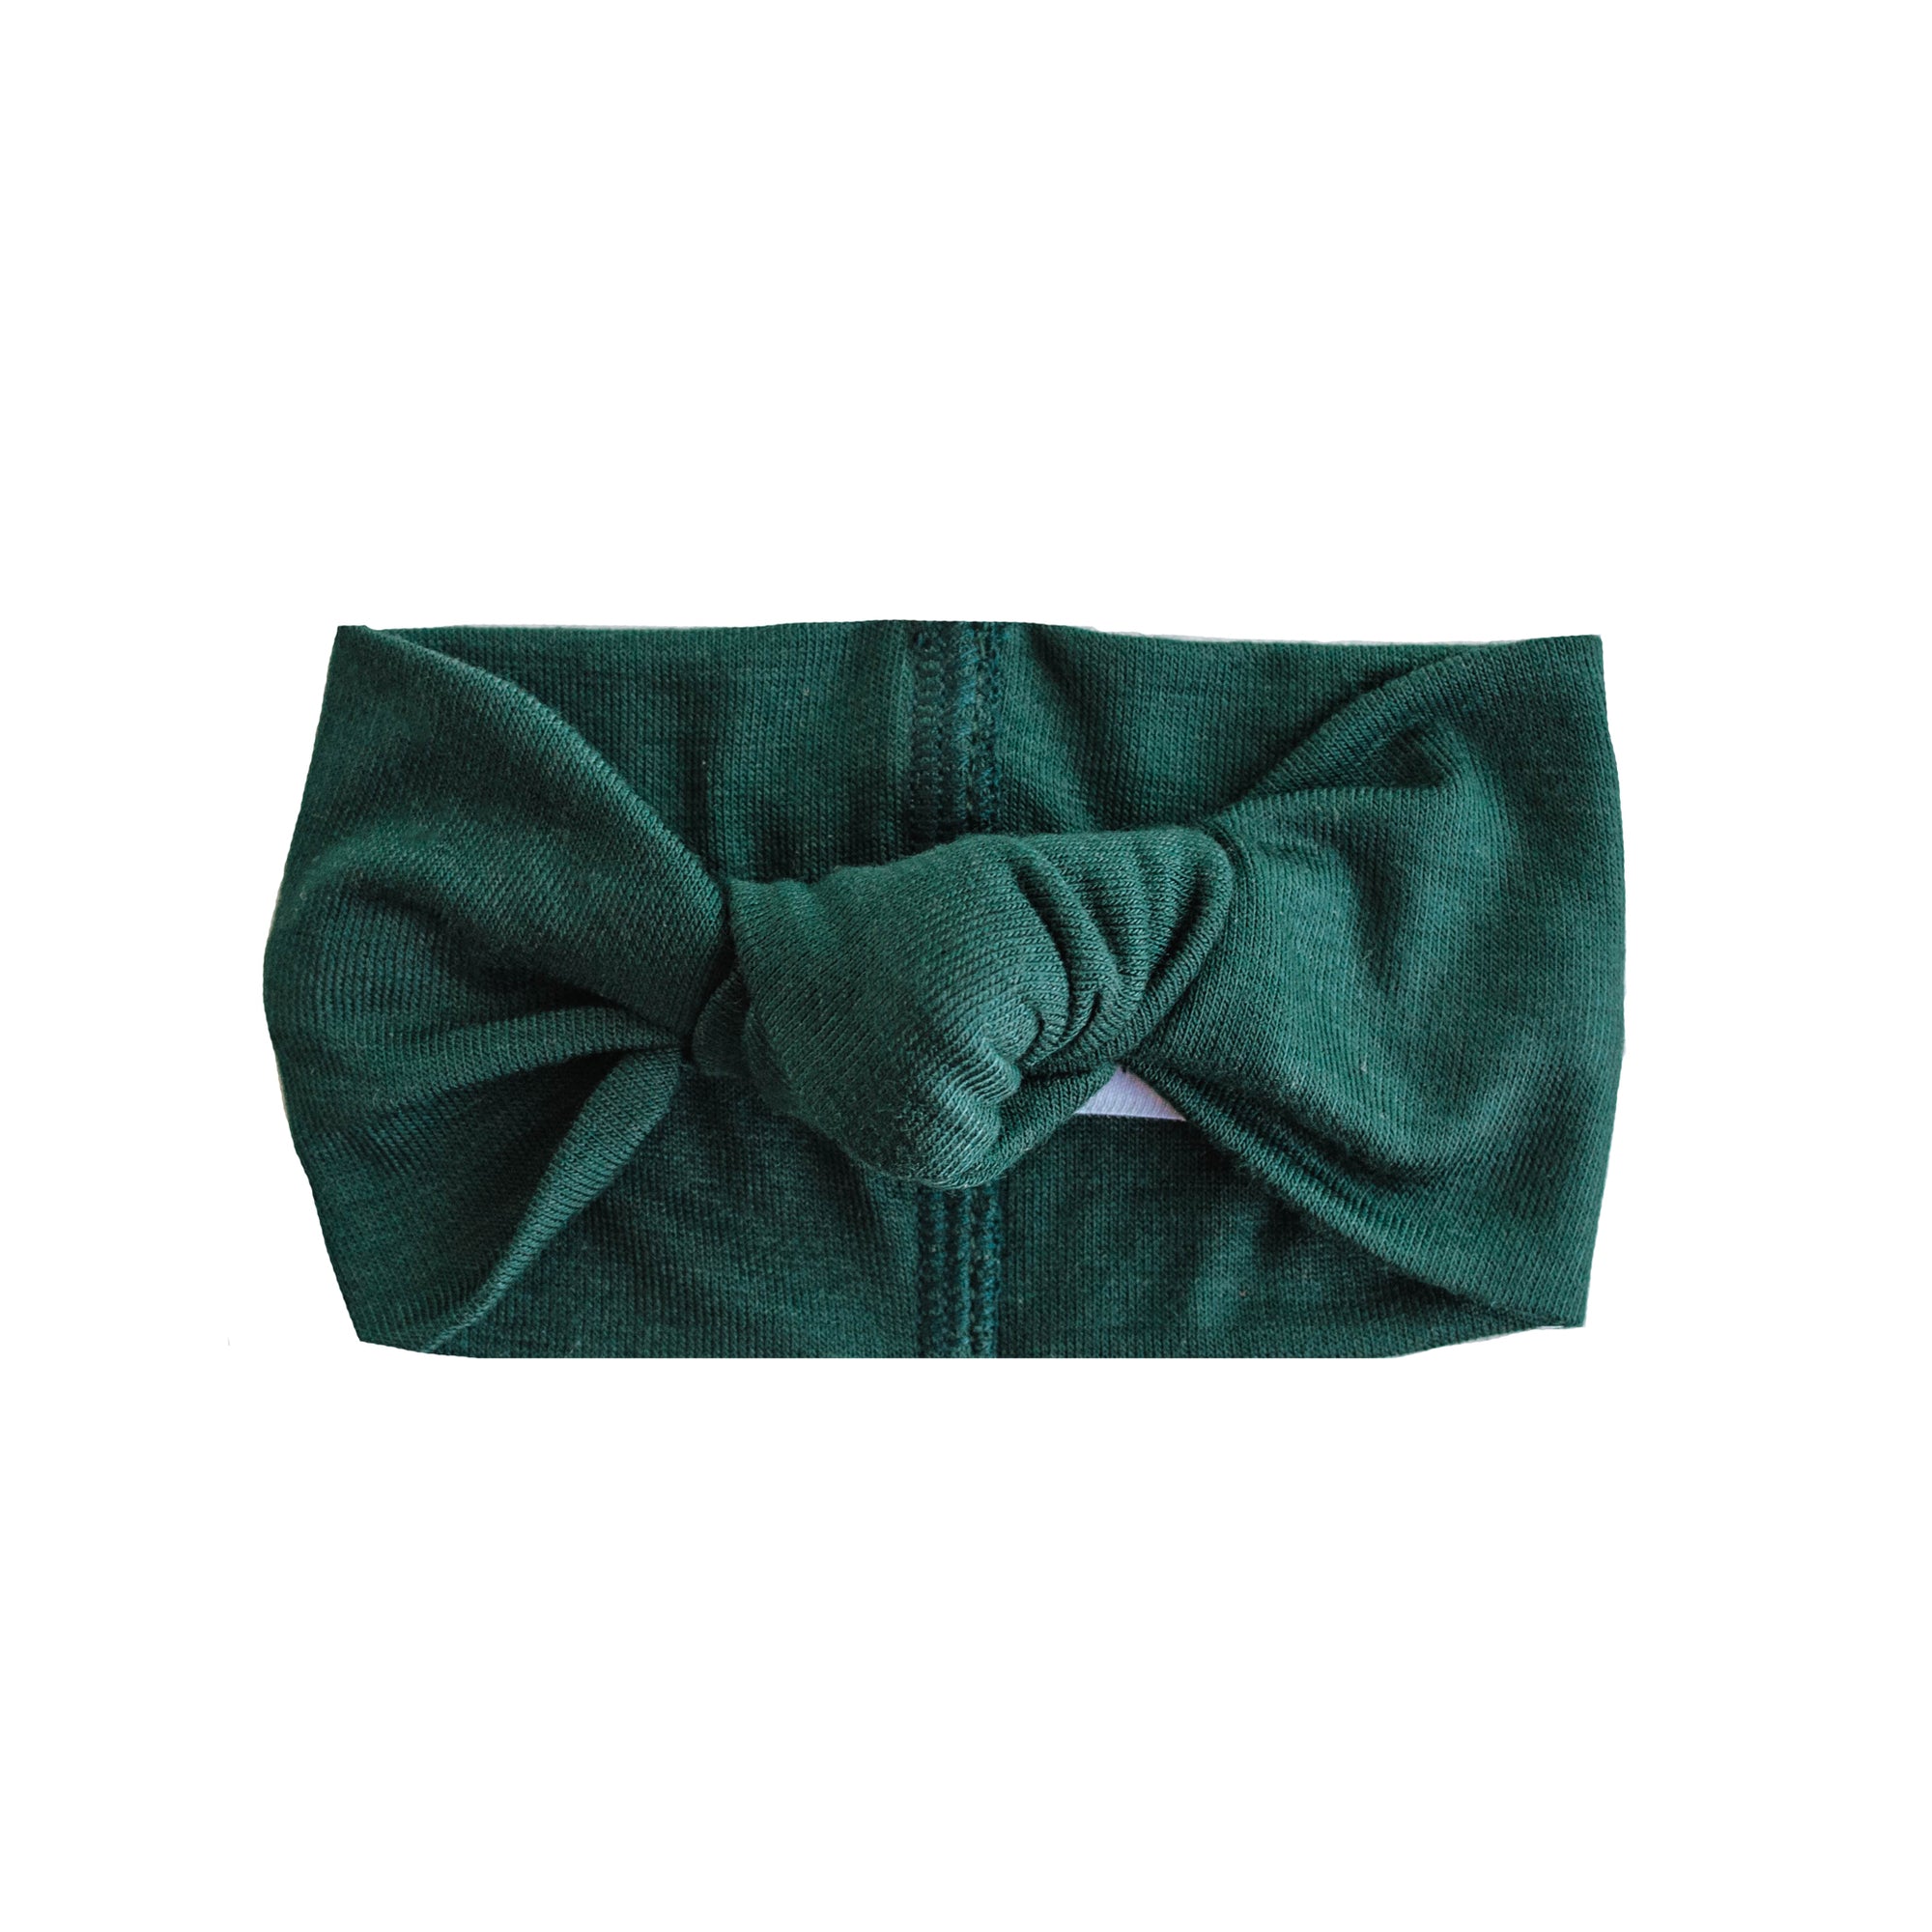 Top Knot Headband | Emerald Green - LITTLEMISSDESSA